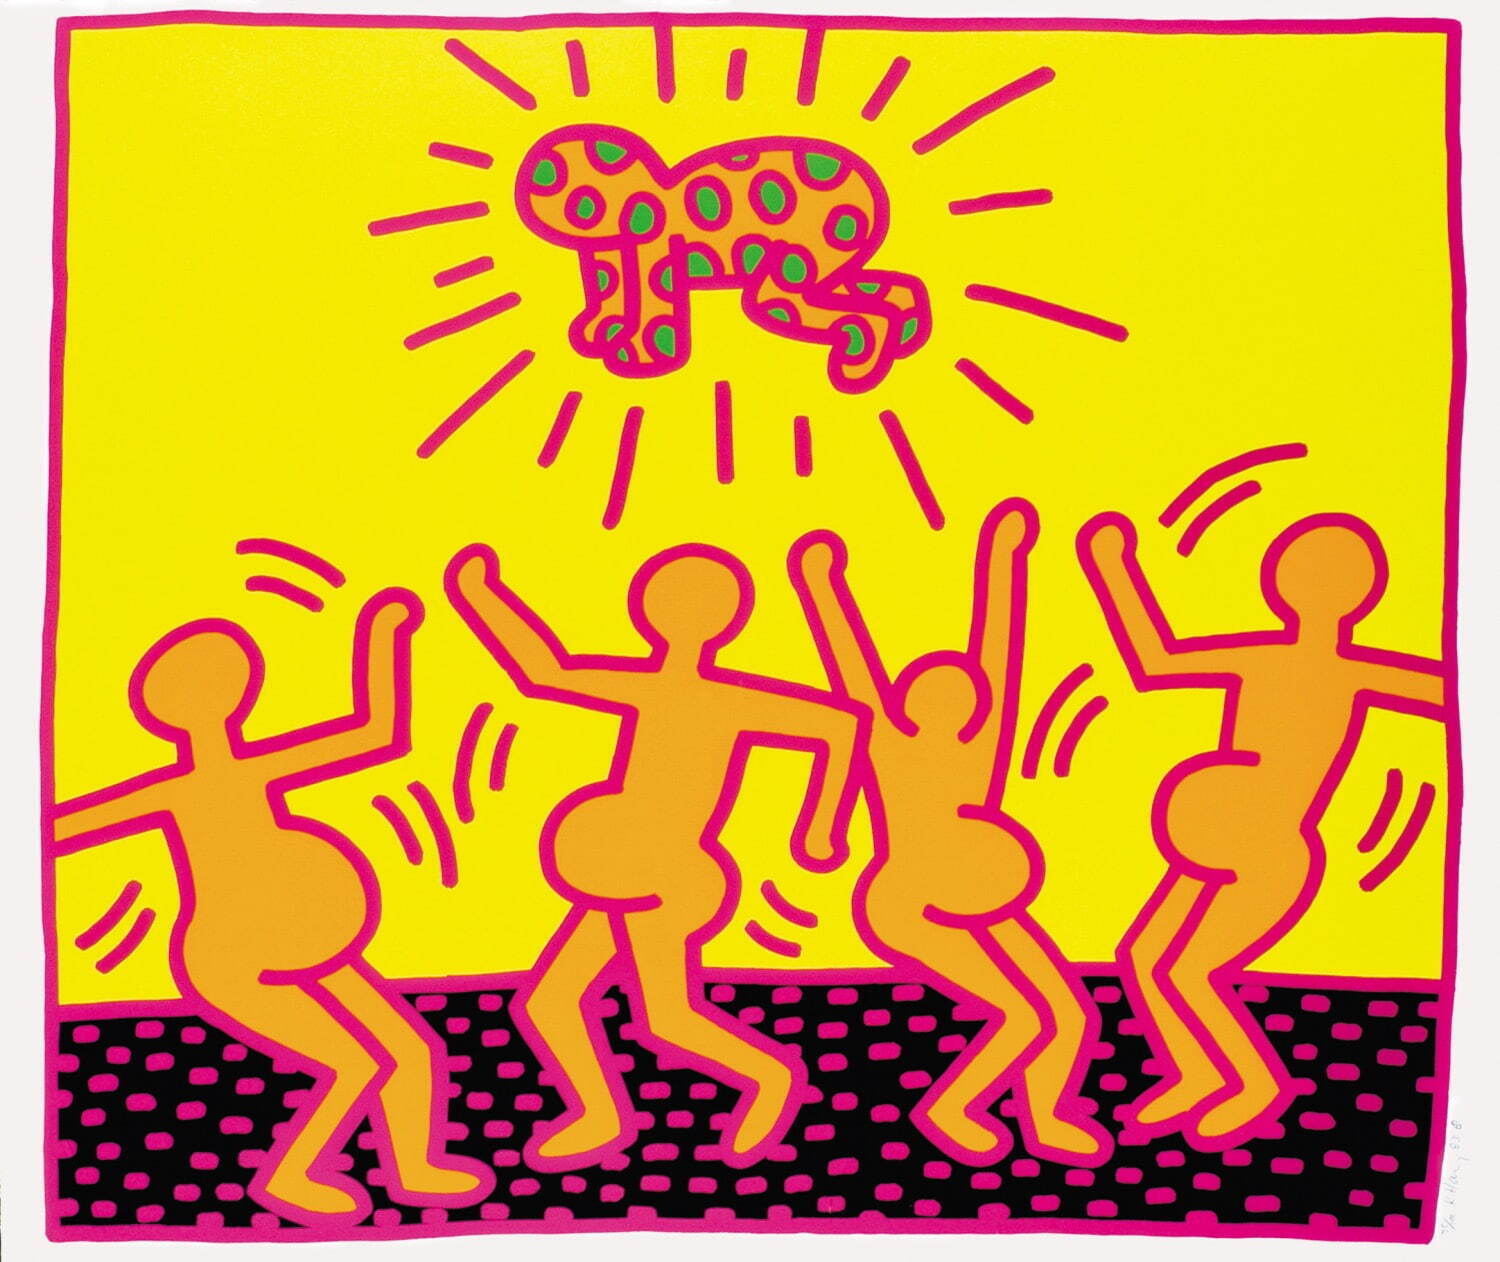 キース・へリング 《無題》 1983年 中村キース・ヘリング美術館蔵
Keith Haring Artwork ©Keith Haring Foundation